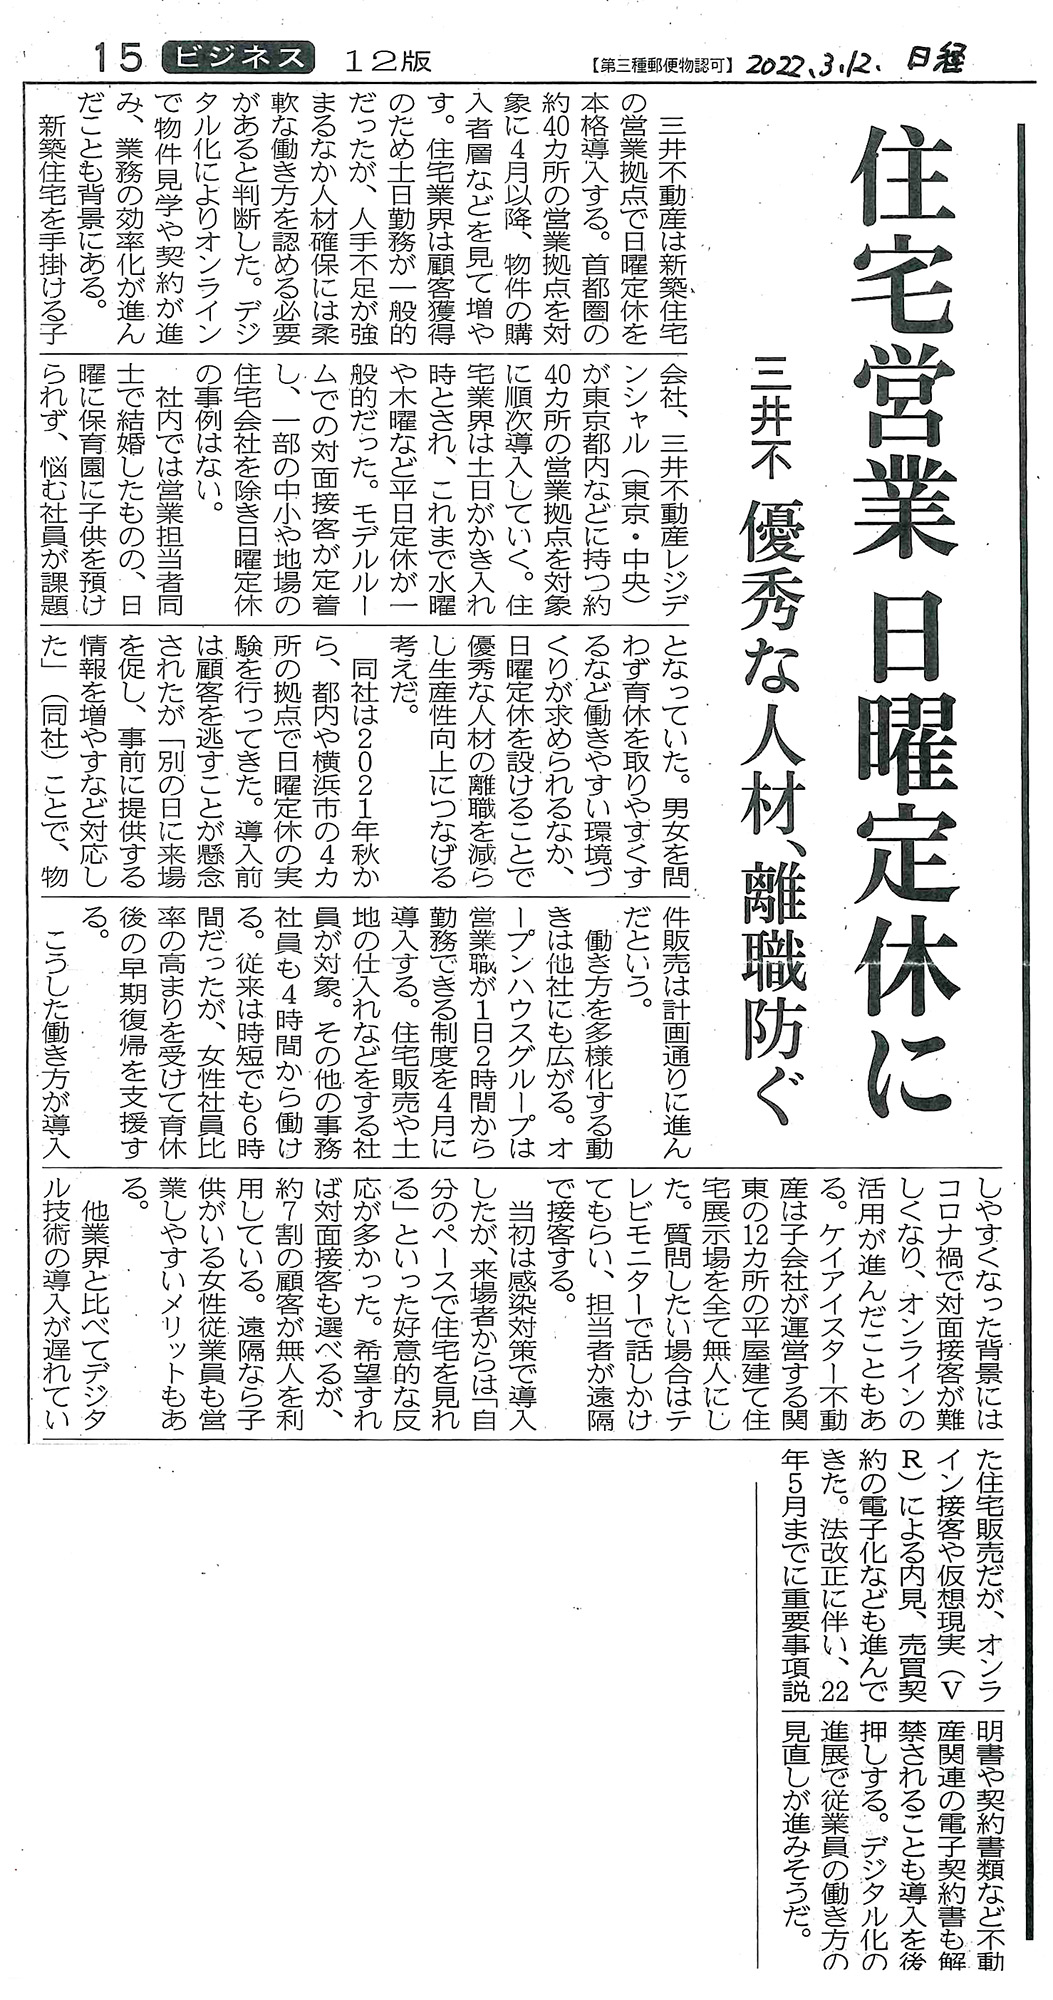 日経新聞 2022年3月12月号 記事 住宅営業 日曜定休に